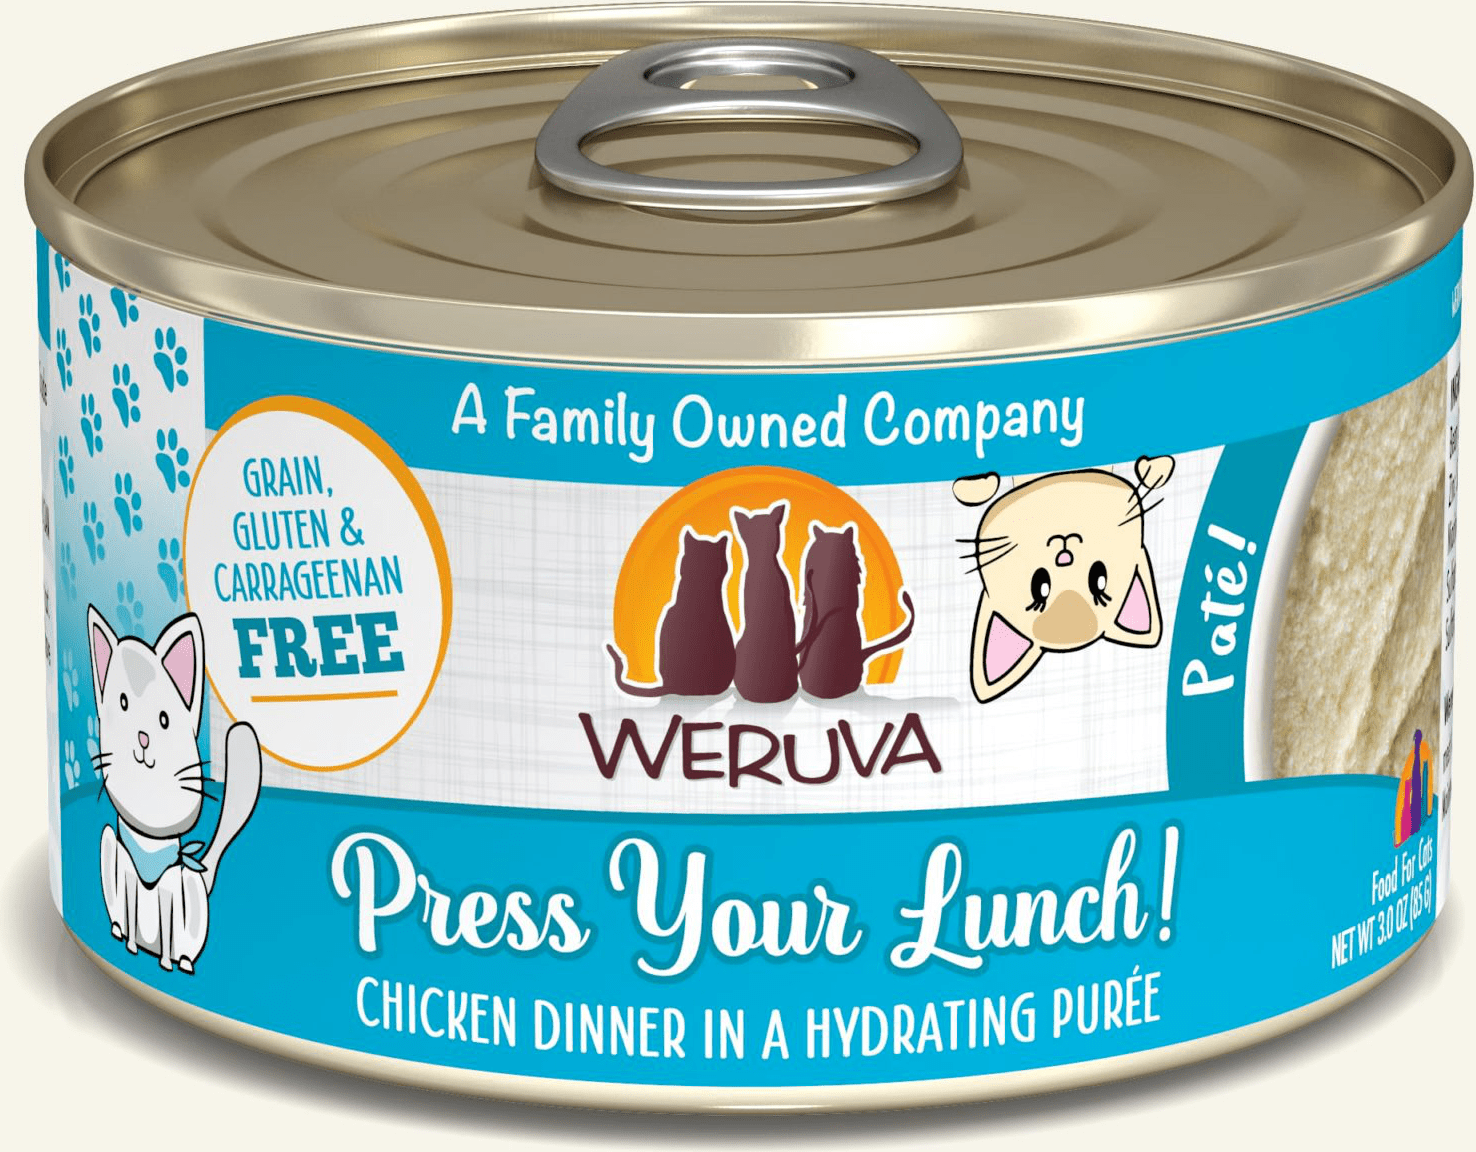 Weruva Press Your Lunch!